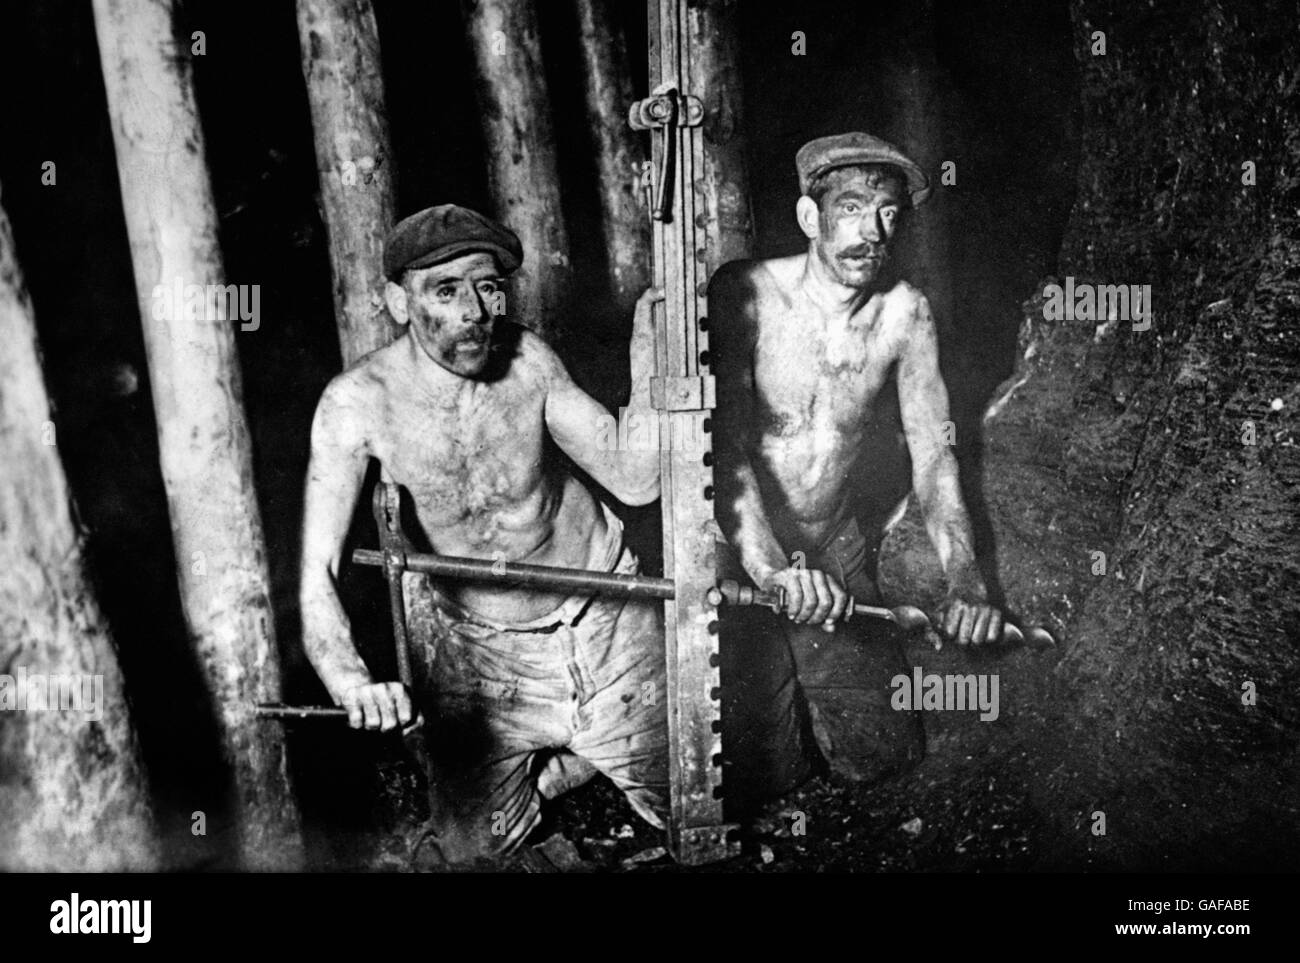 Britische Industrie - Bergbau - 1923. Bergleute bohren in eine Kohlewand. Stockfoto